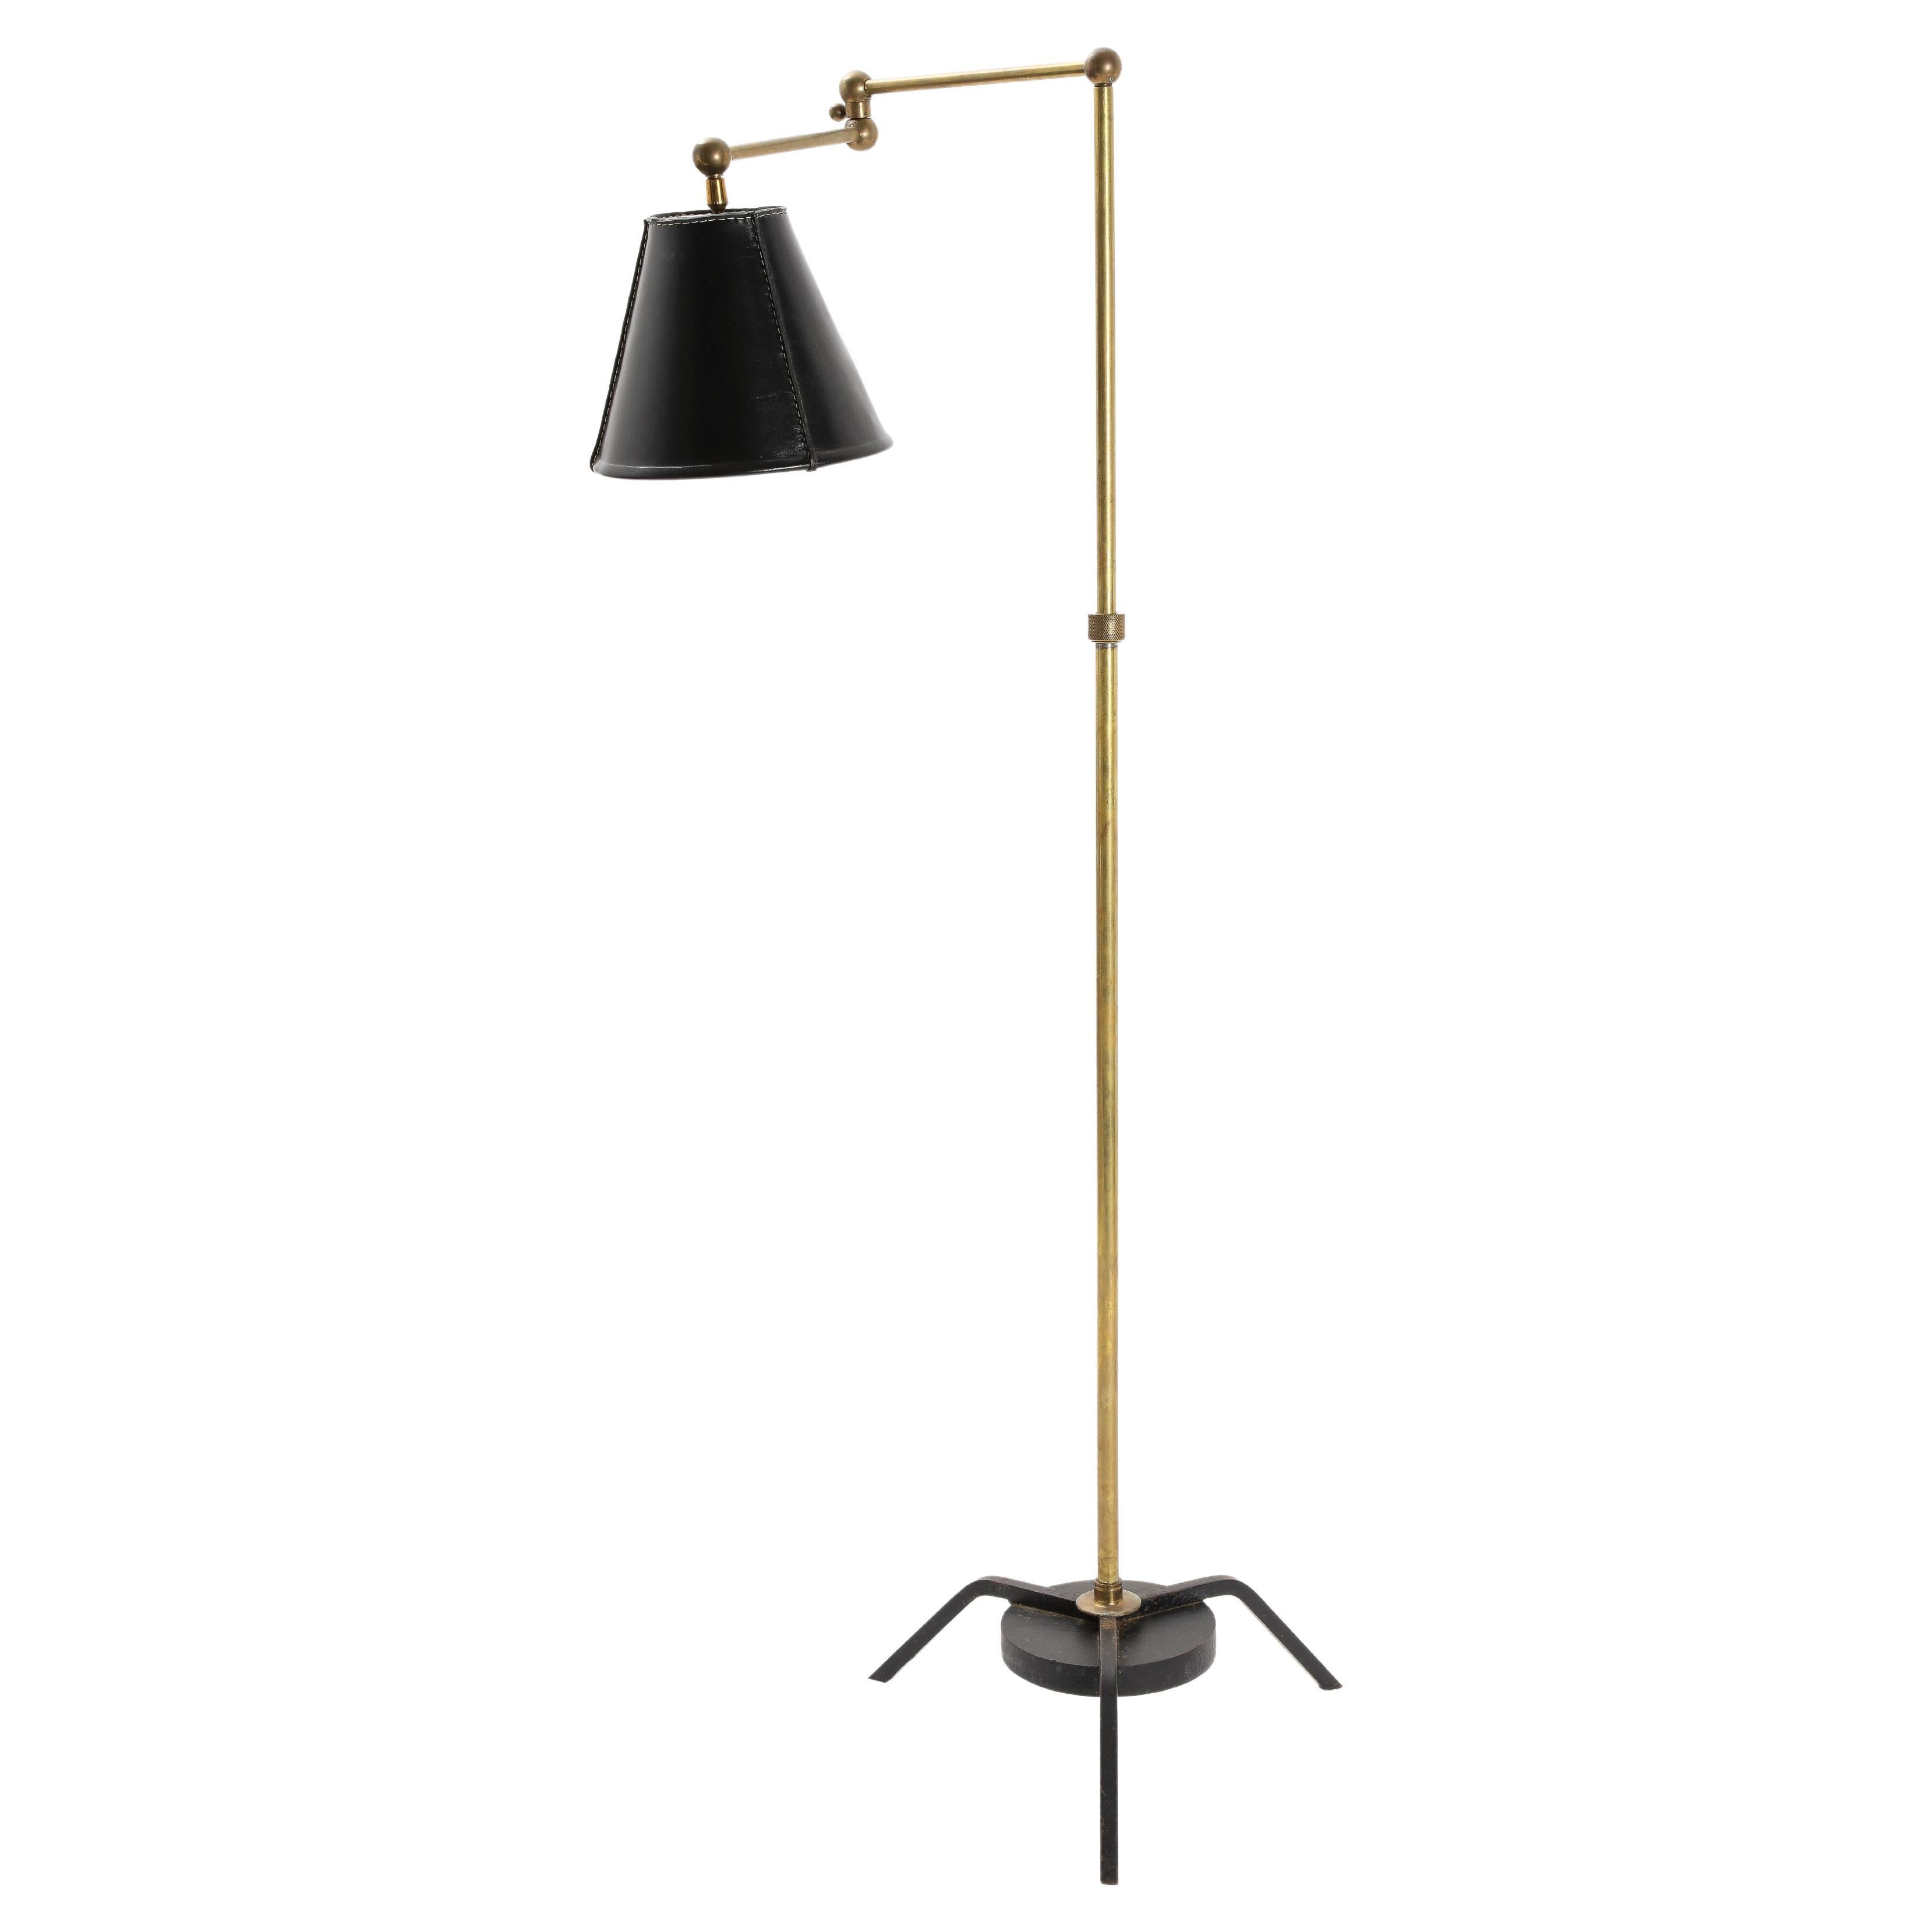 Elegant lampadaire réglable avec bras oscillant et abat-jour en cuir.